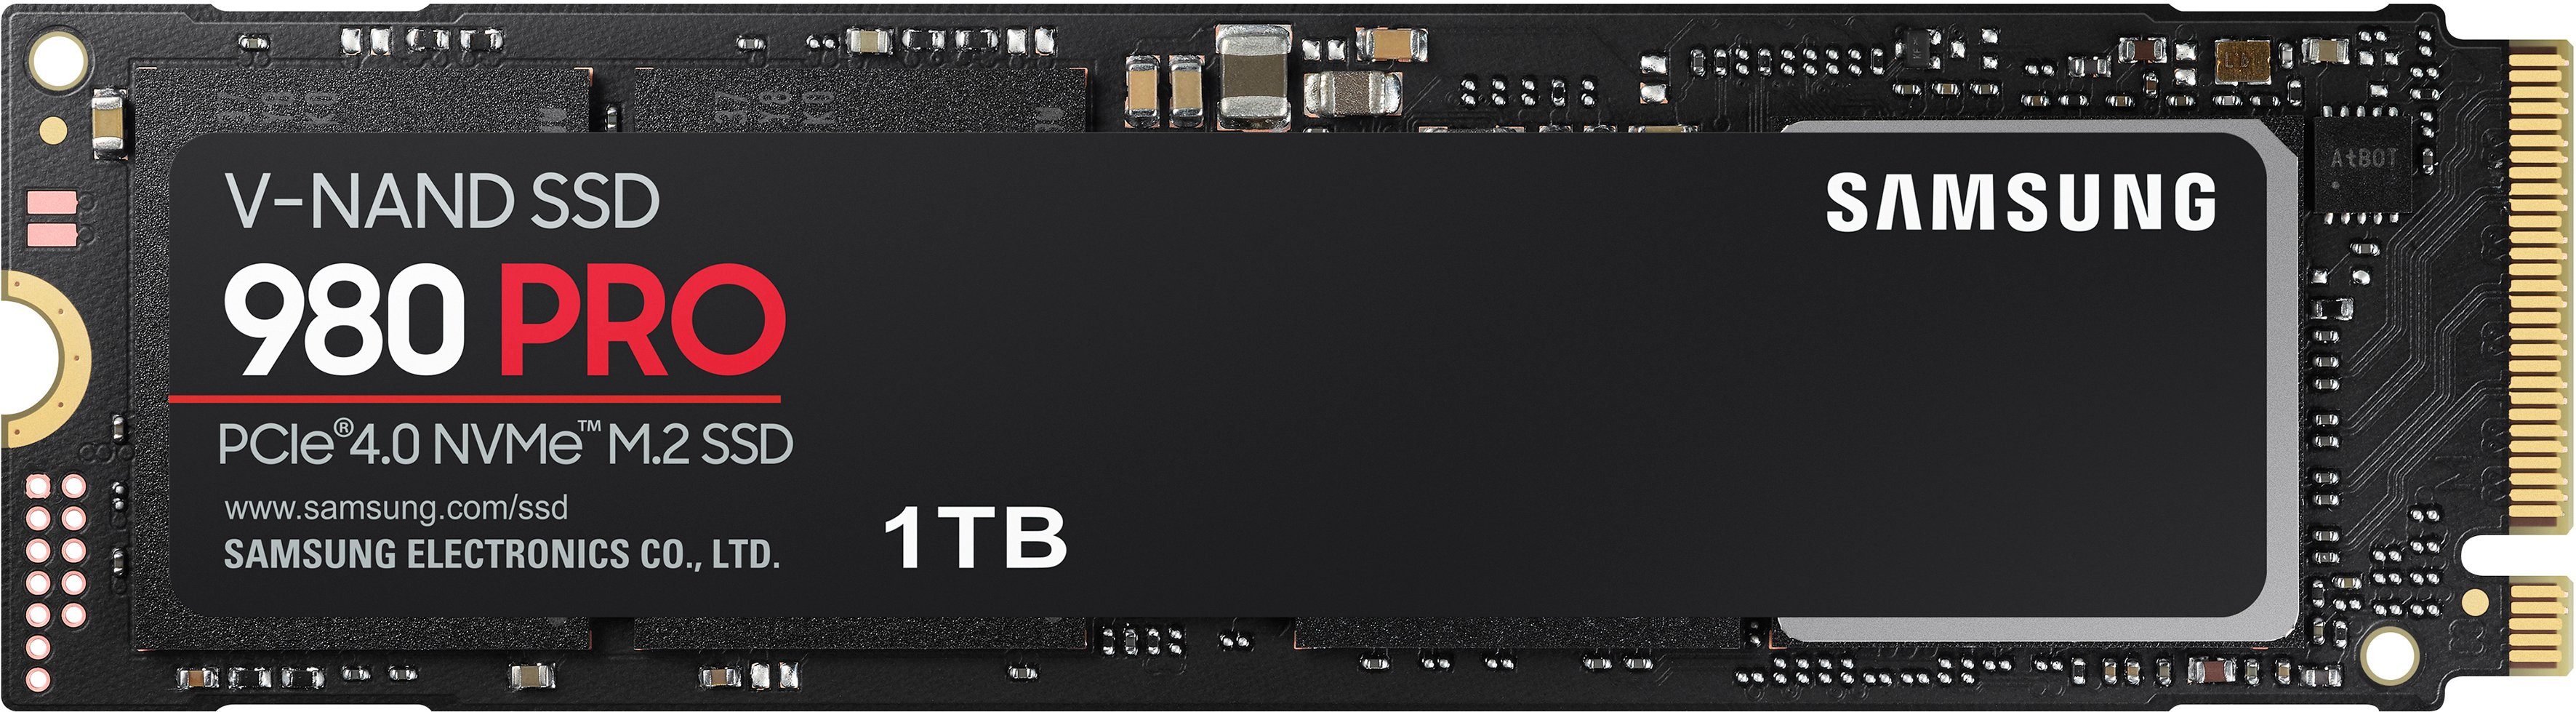 Samsung 980 PRO interne SSD (1 TB) 7000 MB/S Lesegeschwindigkeit, 5000 MB/S Schreibgeschwindigkeit, Playstation 5 kompatibel, PCIe® 4.0 NVMe™, M.2